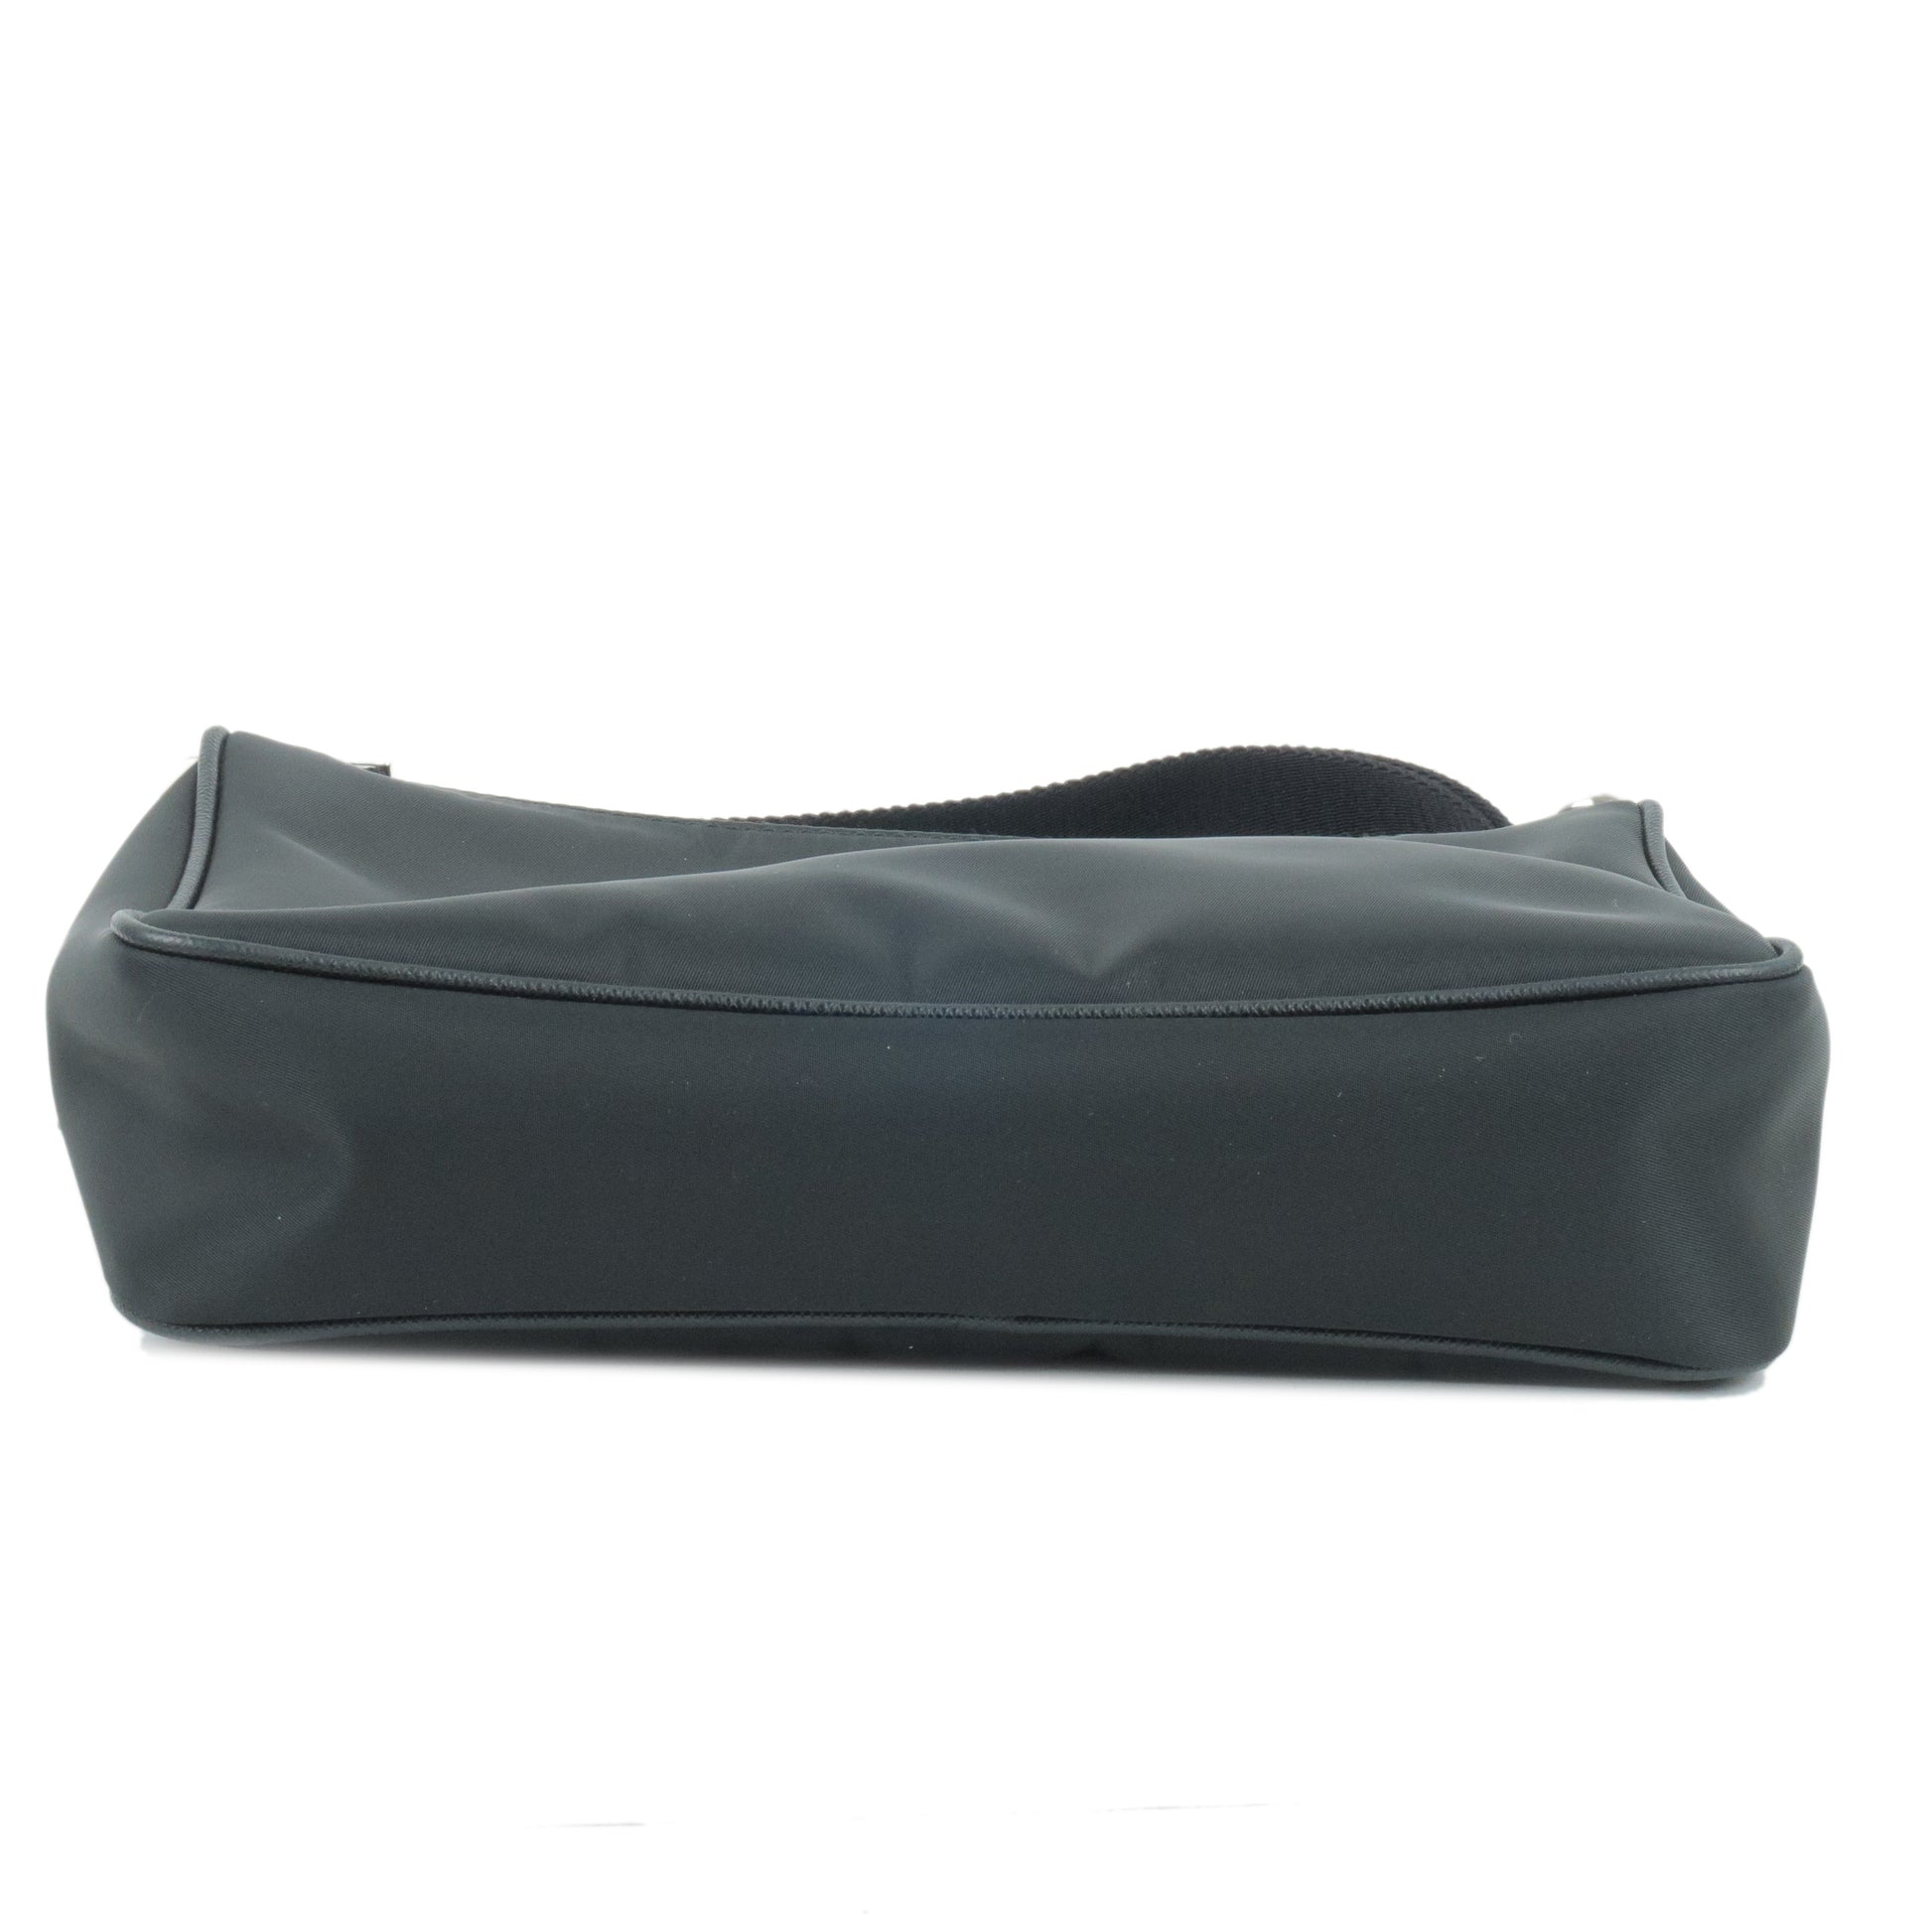 Prada Shoulder Bag – Luxxe